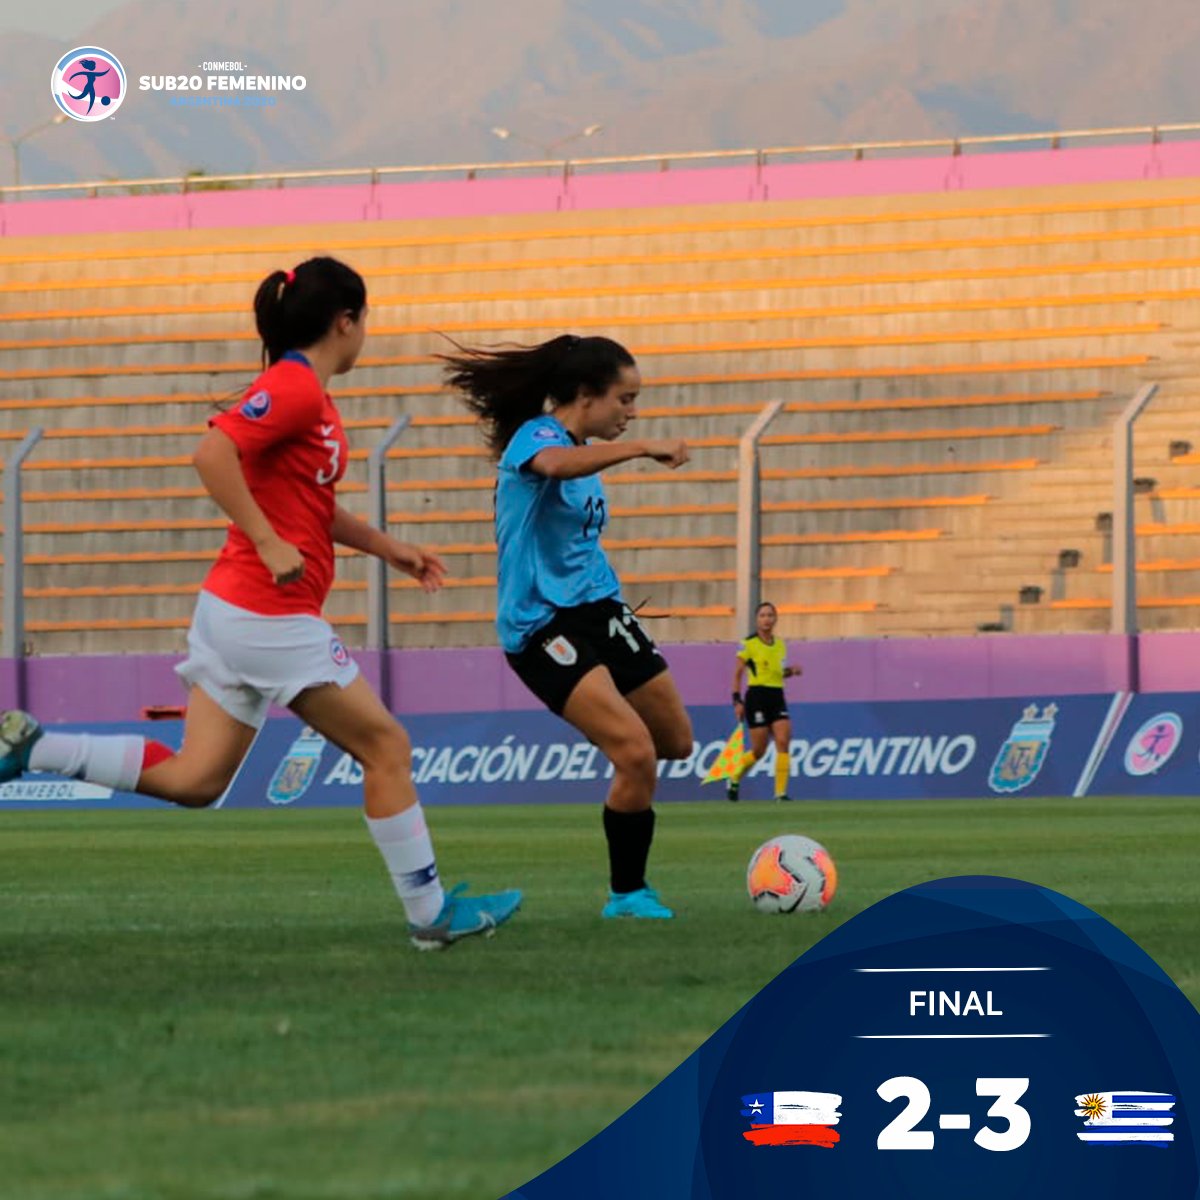 ¡Ganó la la selección de @Uruguay! 🇺🇾 derrotó 2-3 a @LaRoja 🇨🇱 por la cuarta fecha del #Sub20Femenino.